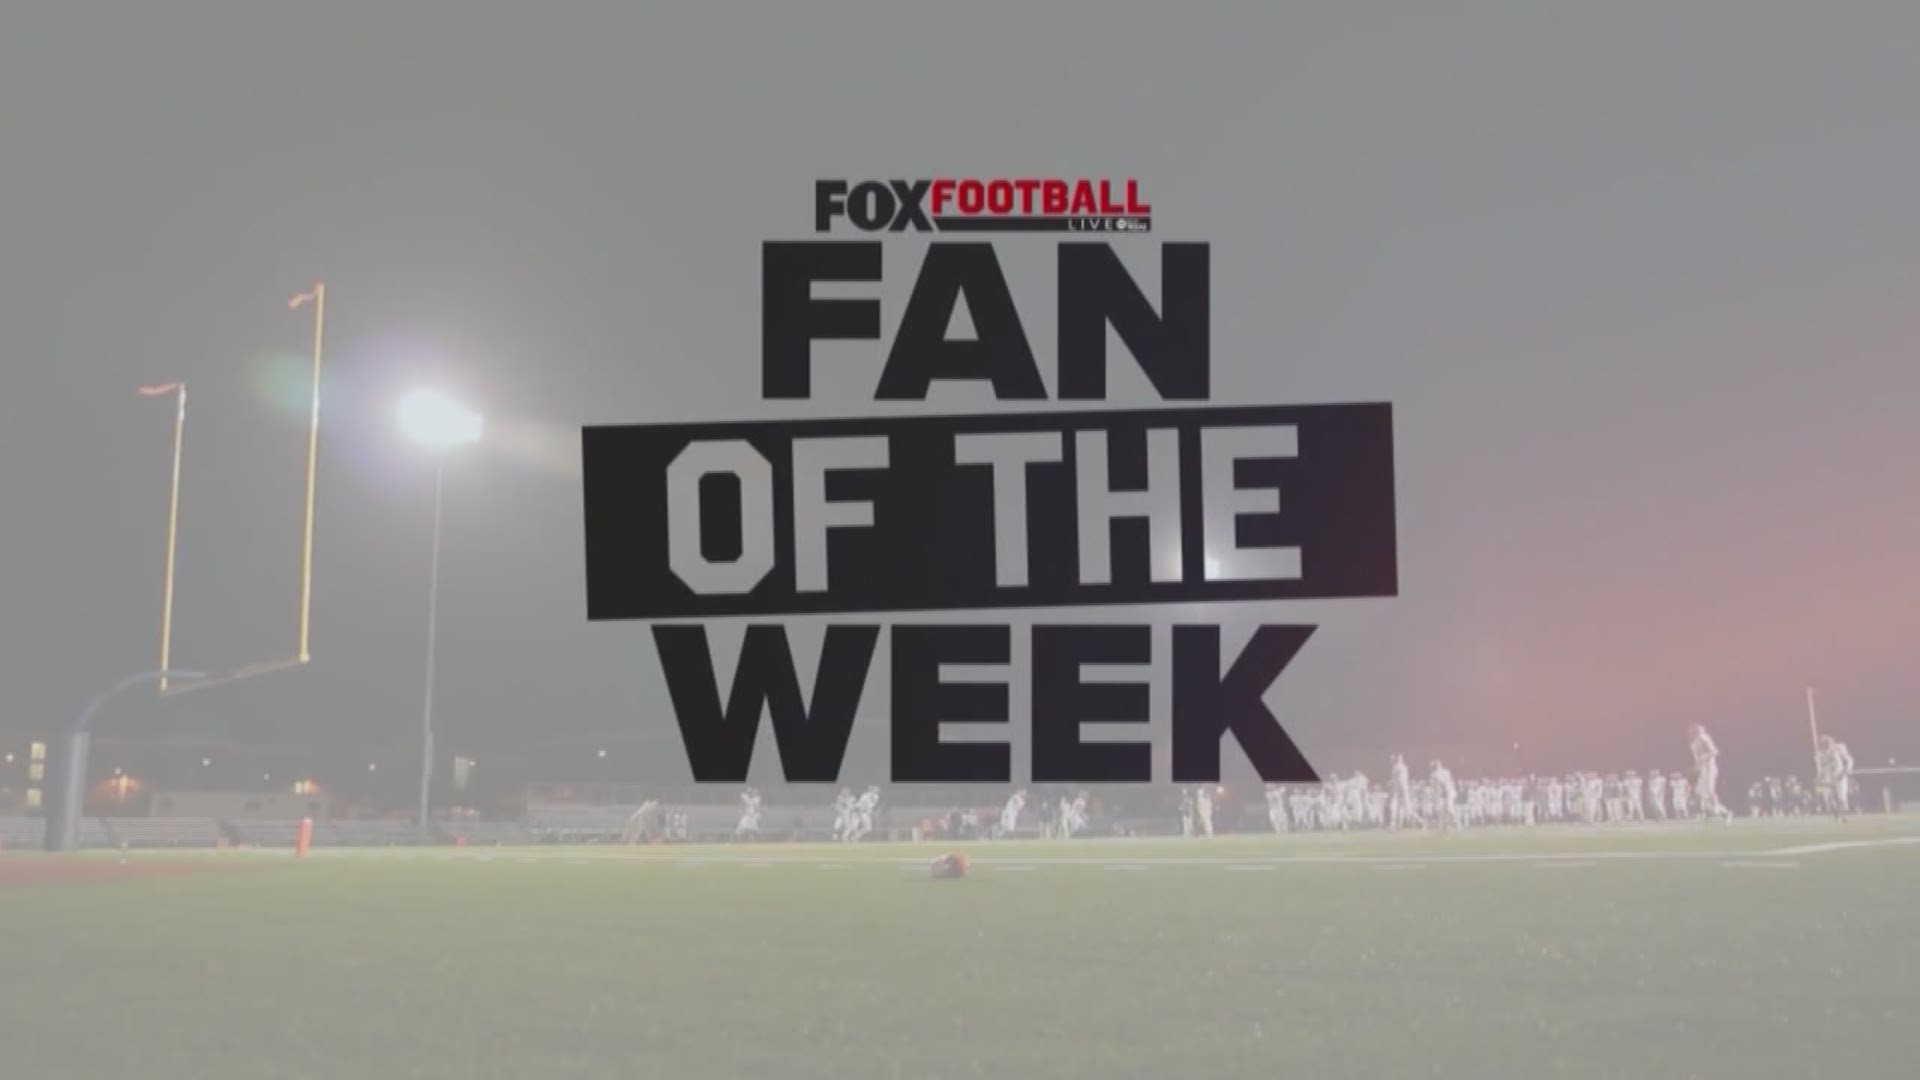 A Major win tonight in the FOX Football Live Fan of the Week